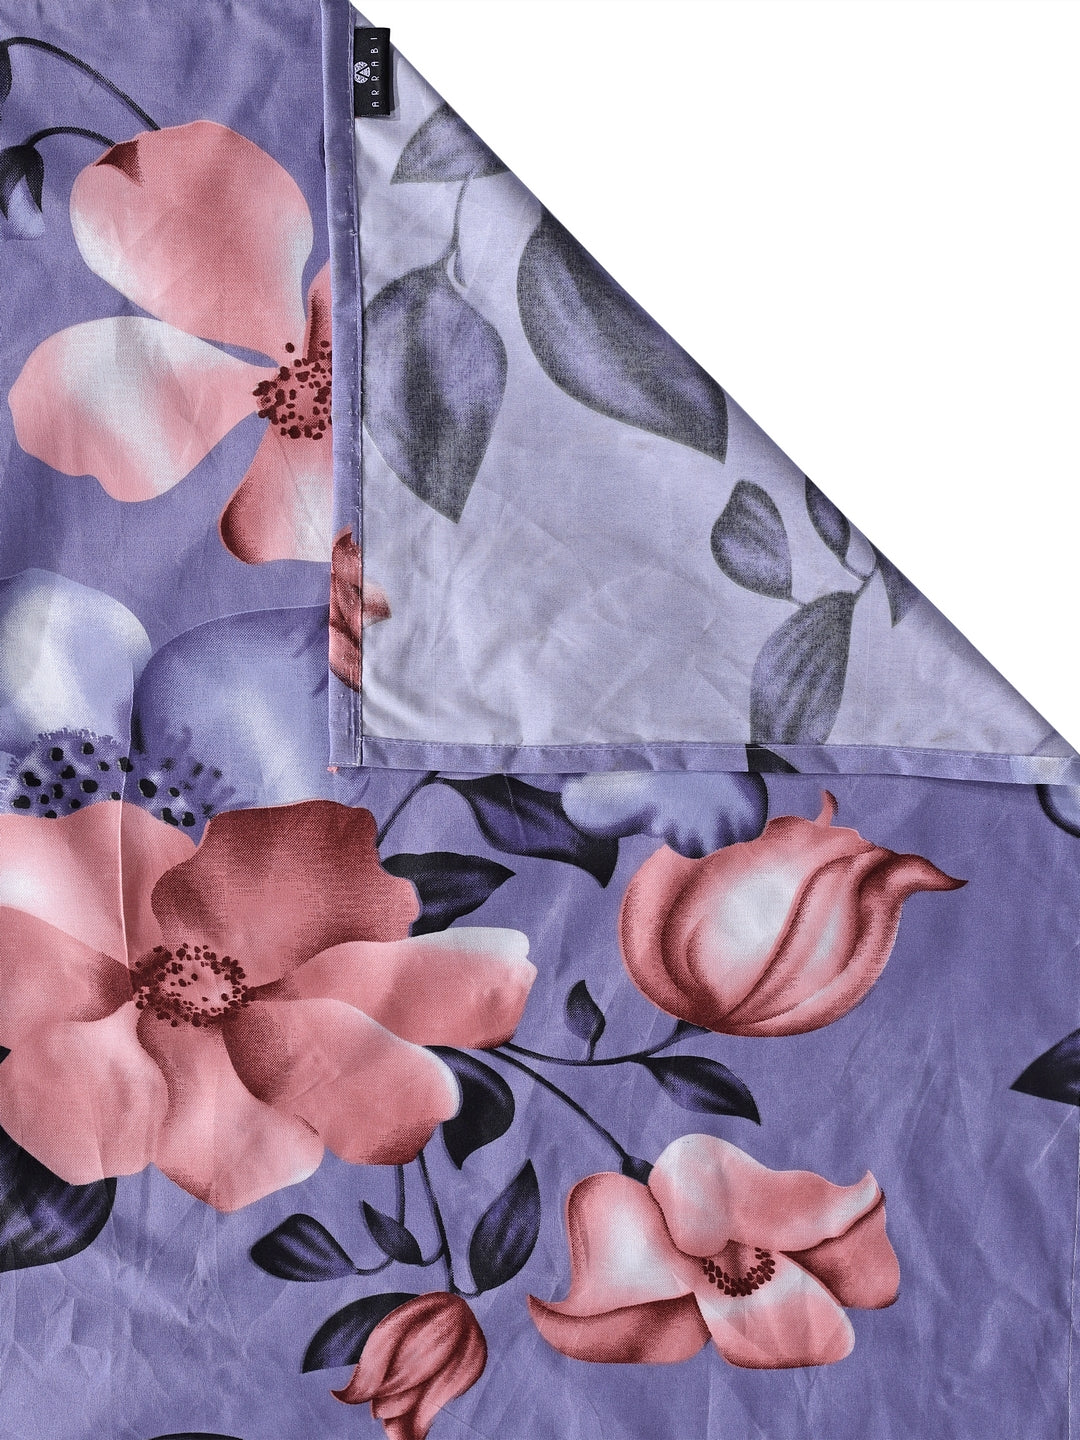 Arrabi Purple Floral TC Cotton Blend Double Size Comforter Bedding Set with 2 Pillow Cover